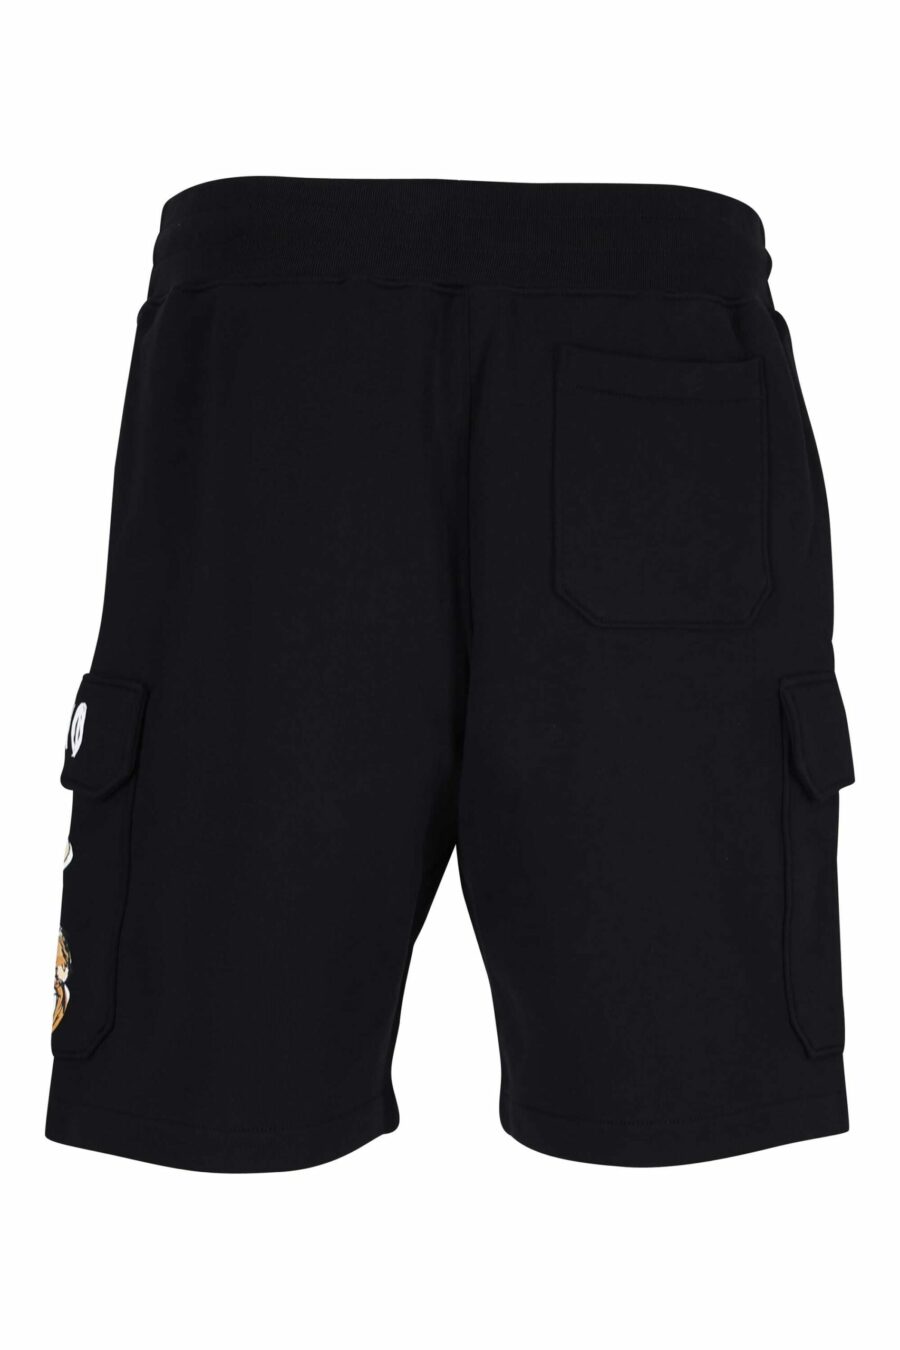 Pantalón de chándal negro de algodón orgánico estilo cargo y logo oso dibujo - 667113767390 2 scaled